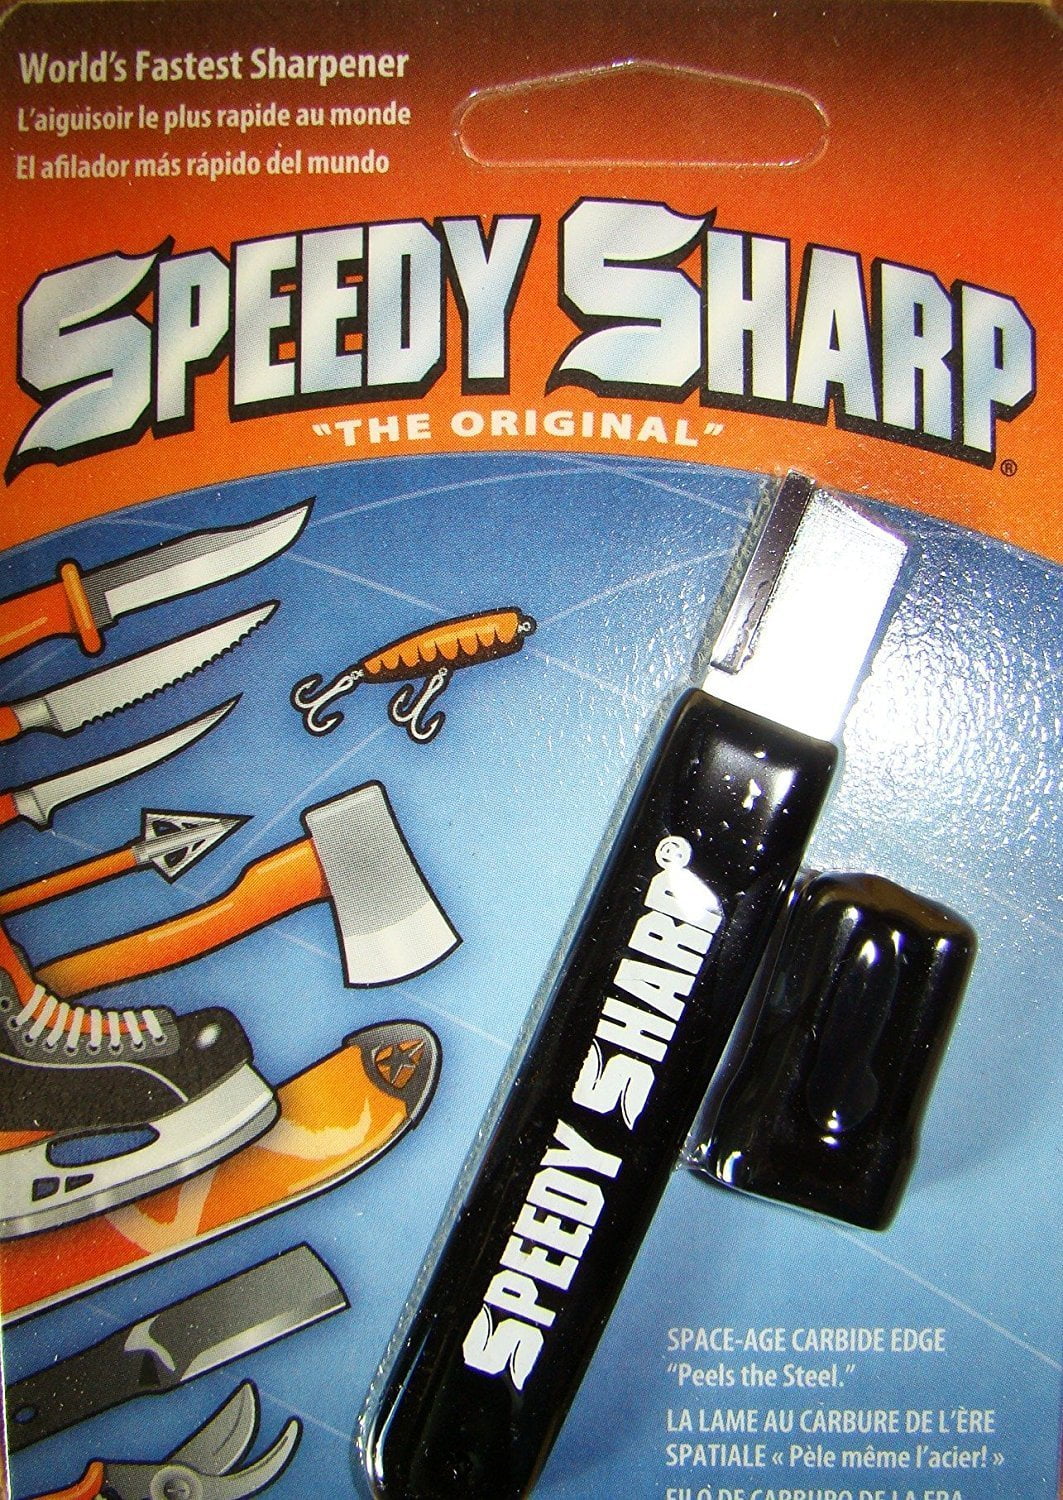 Speedy Sharp Black by Speedy Sharp